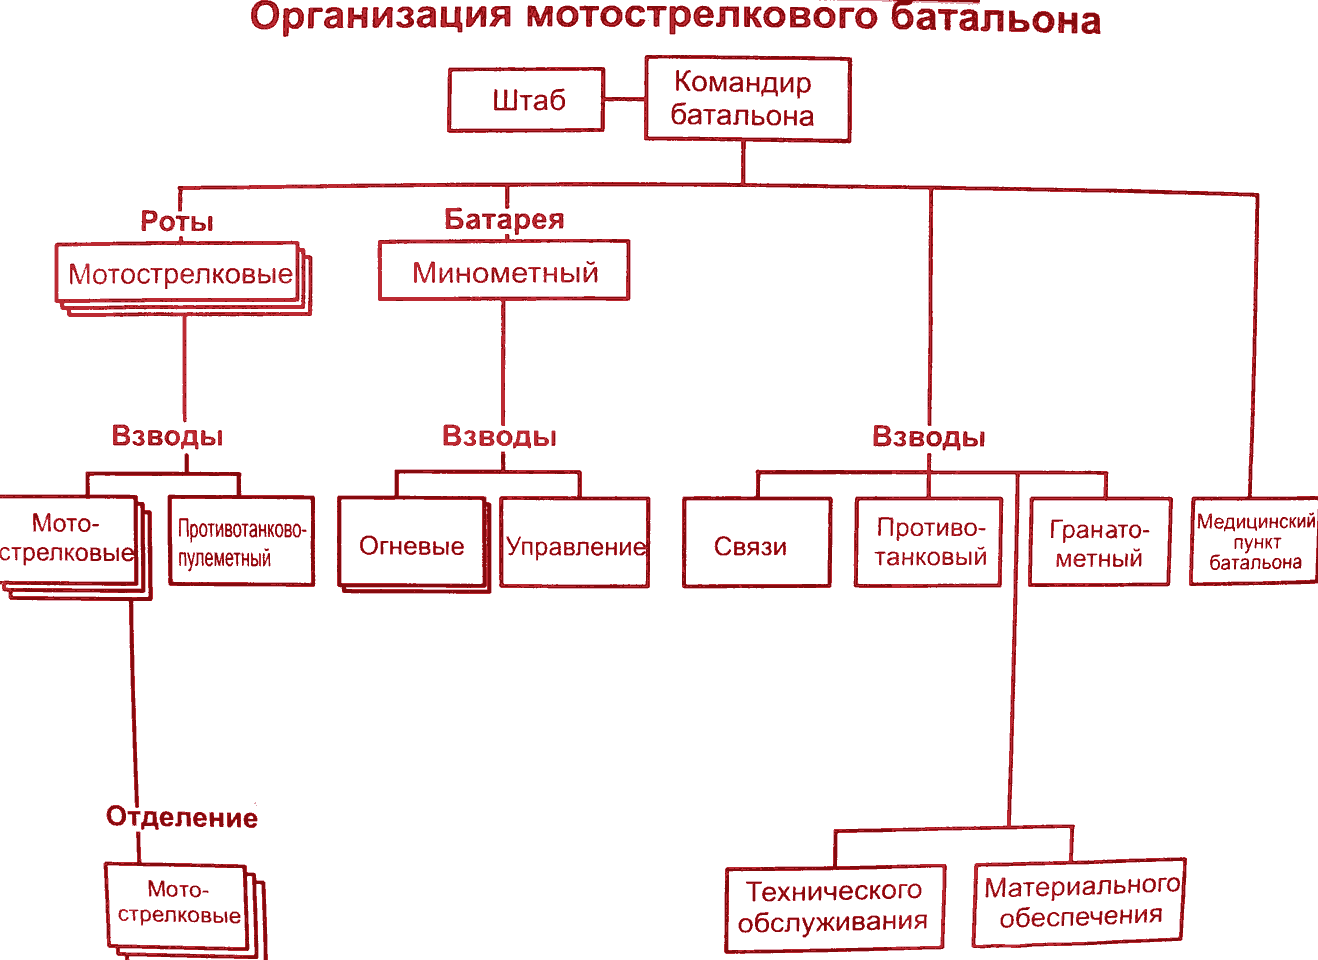 Организационно штатная структура МСБ на БТР